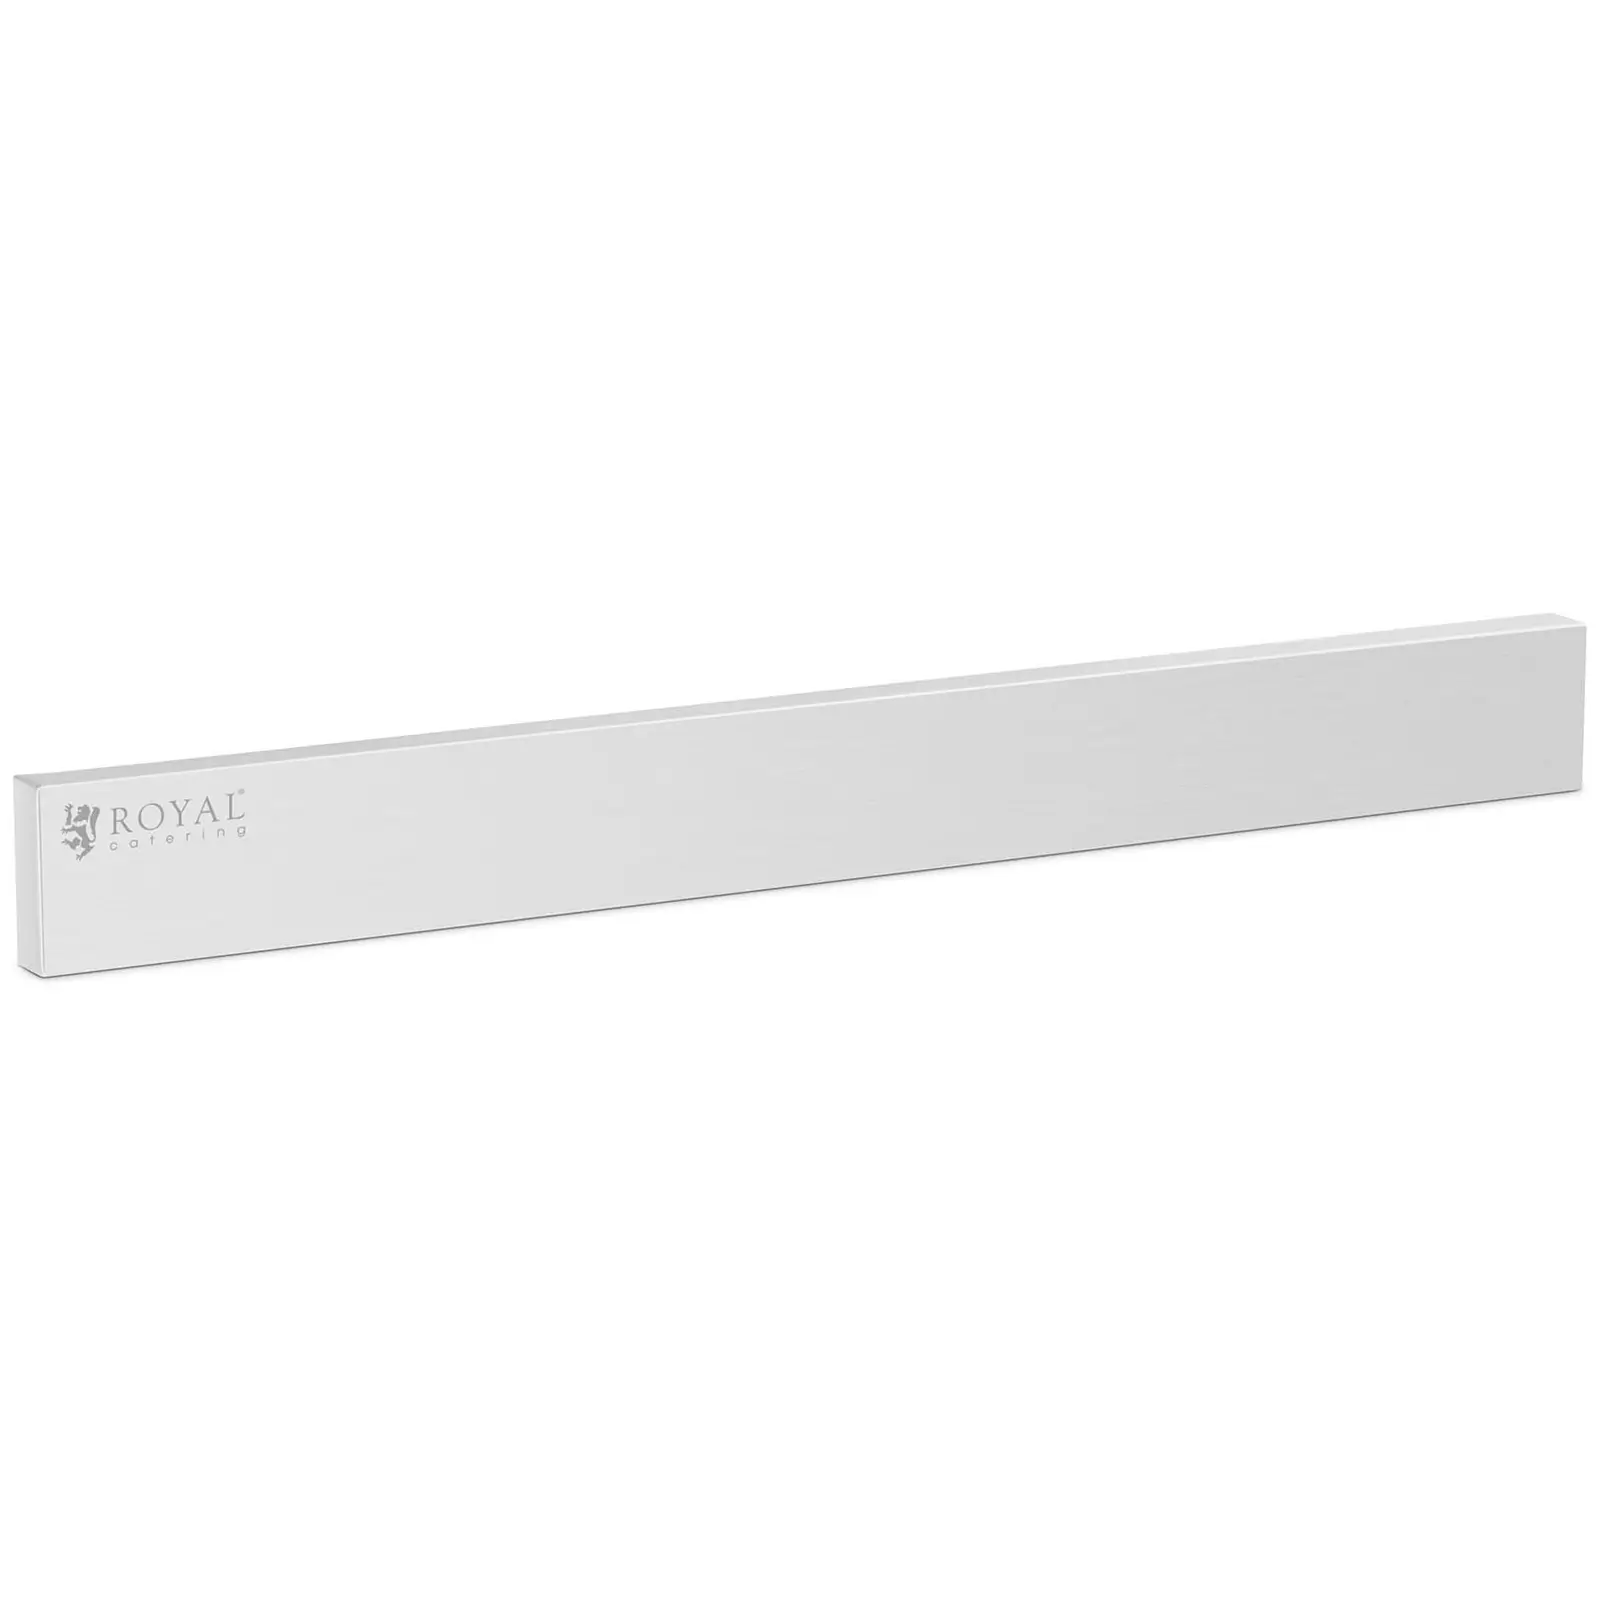 Magnetic bar for knives - Stainless steel / ferrite magnet - 44.5 x 4.5 x 2 cm